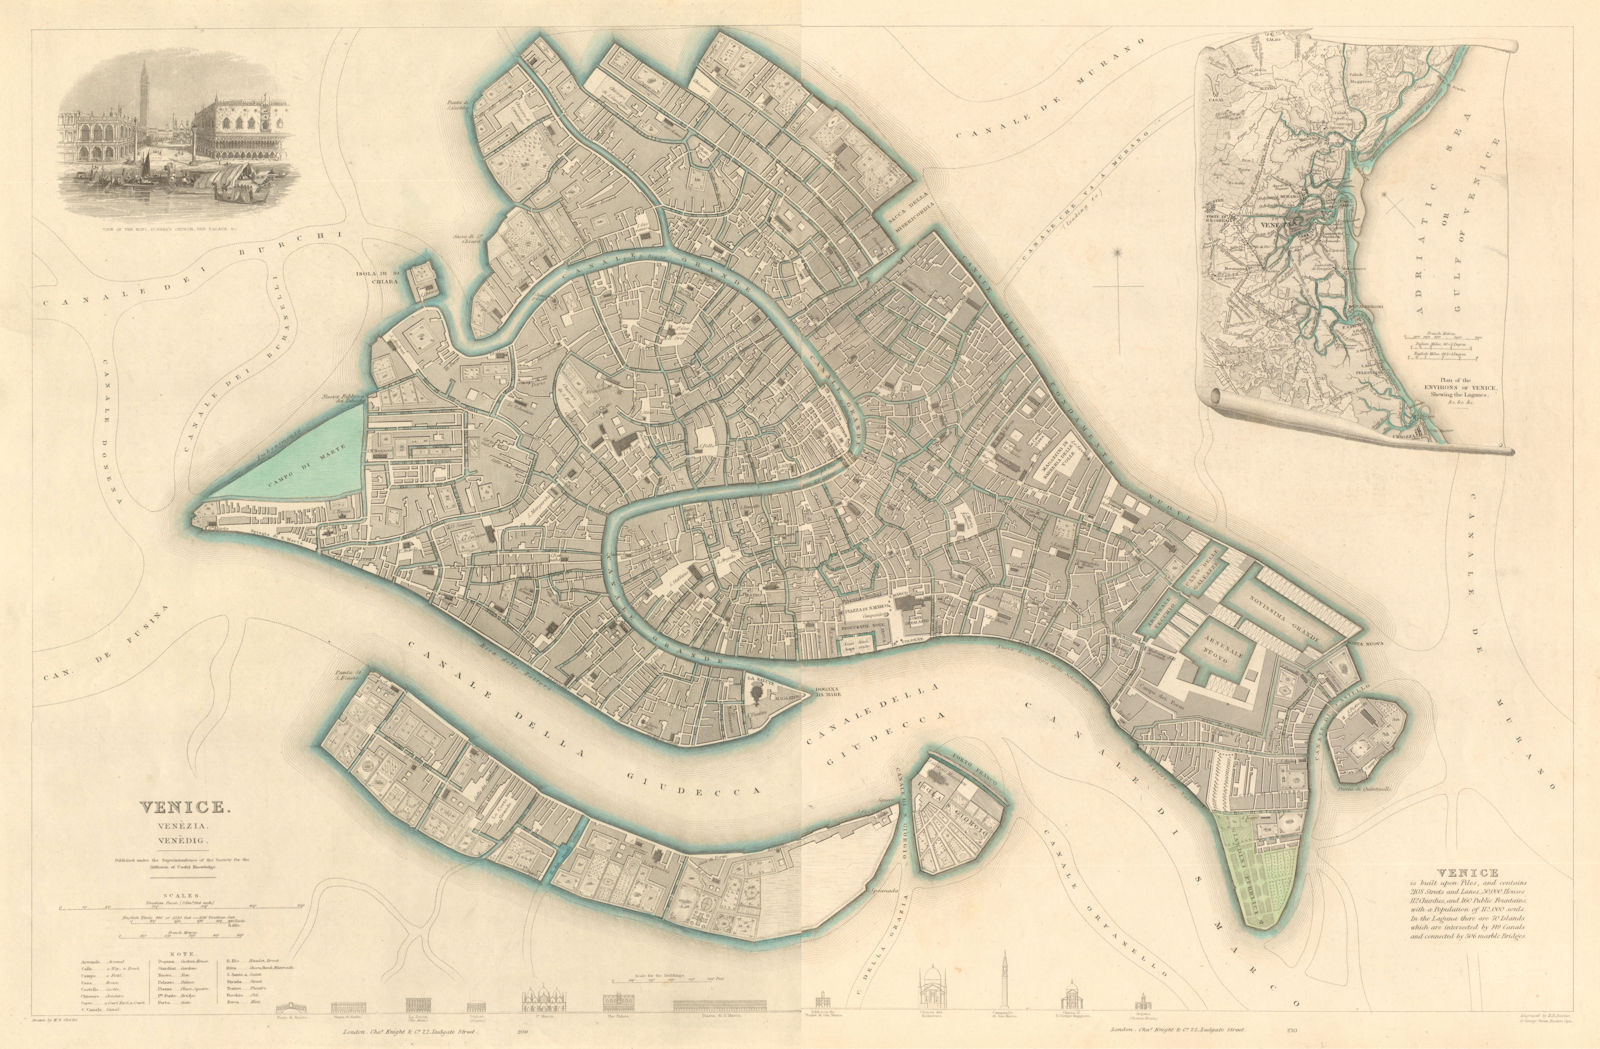 VENICE VENEZIA VENEDIG antique town city map plan. Environs. LARGE. SDUK 1847